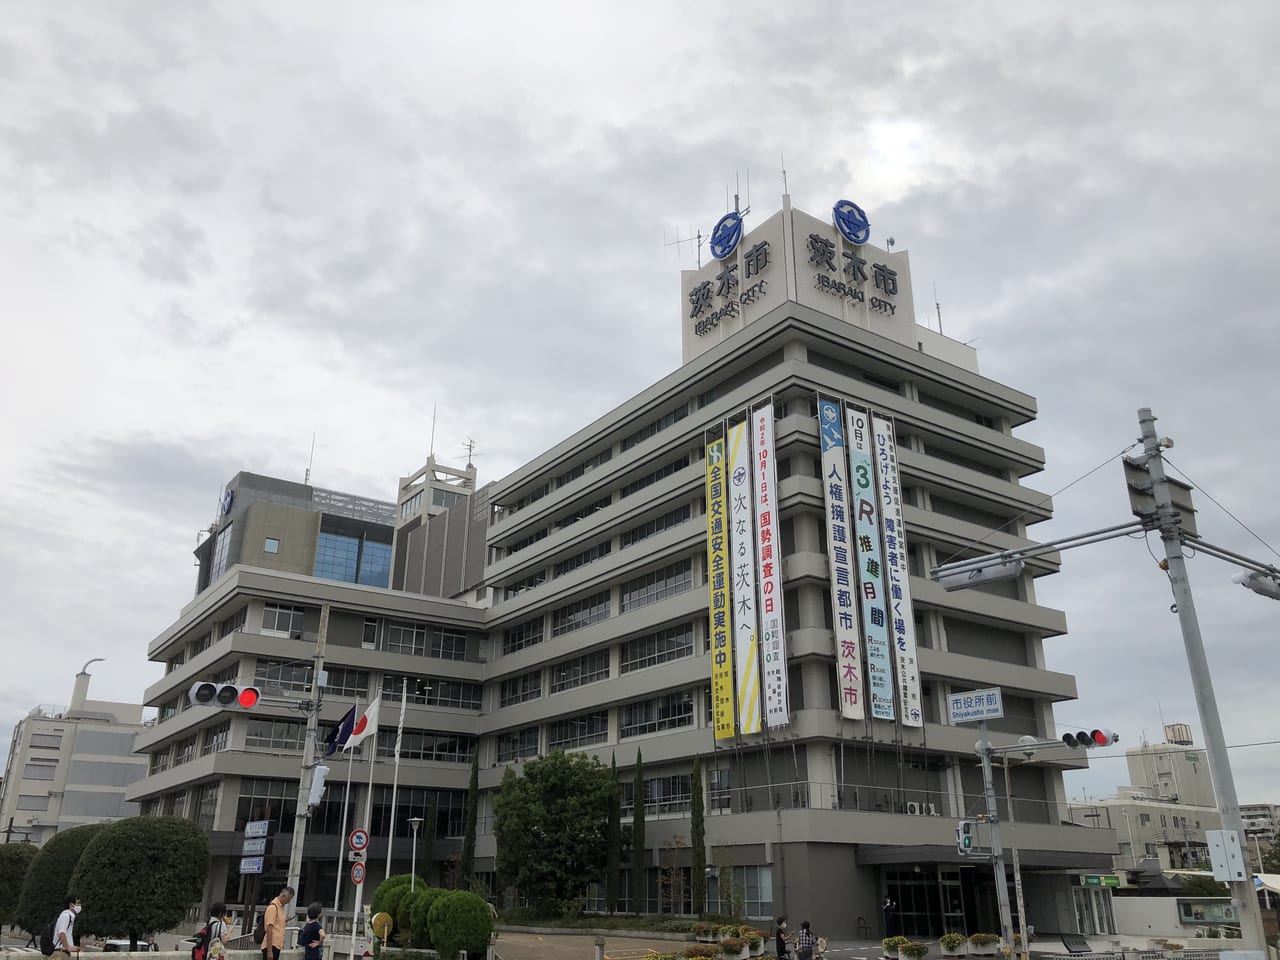 者 茨木 市 感染 【茨木市】市内で21人目の感染者が確認されました。新型コロナウイルス感染症発生状況と自粛生活10のポイントについて※4／23時点